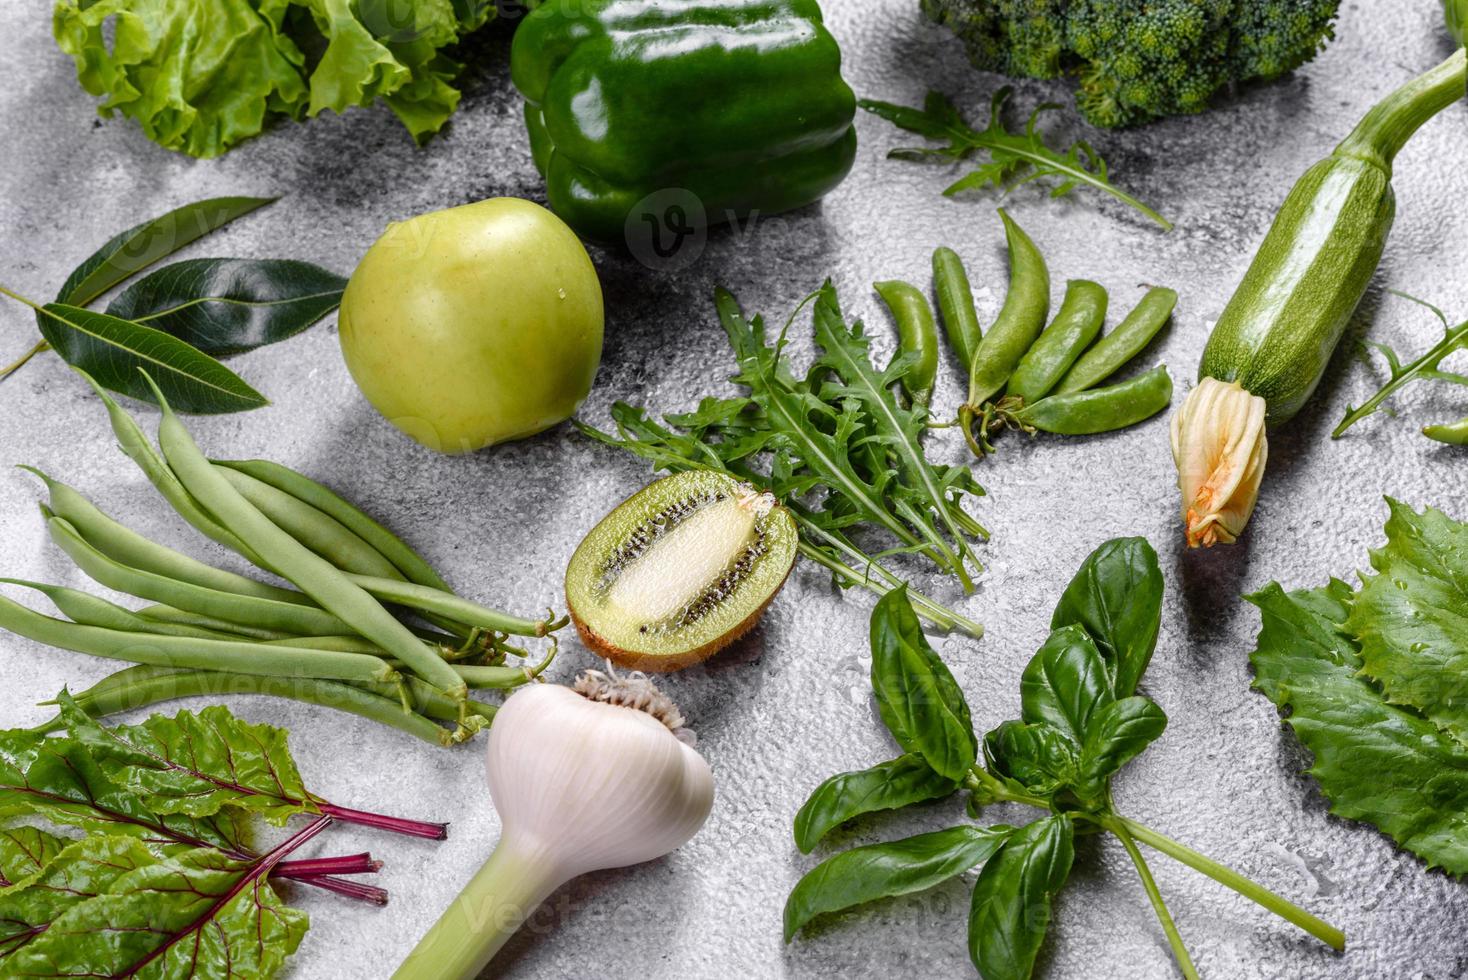 composition de légumes verts brillants et juteux, d'épices et d'herbes photo